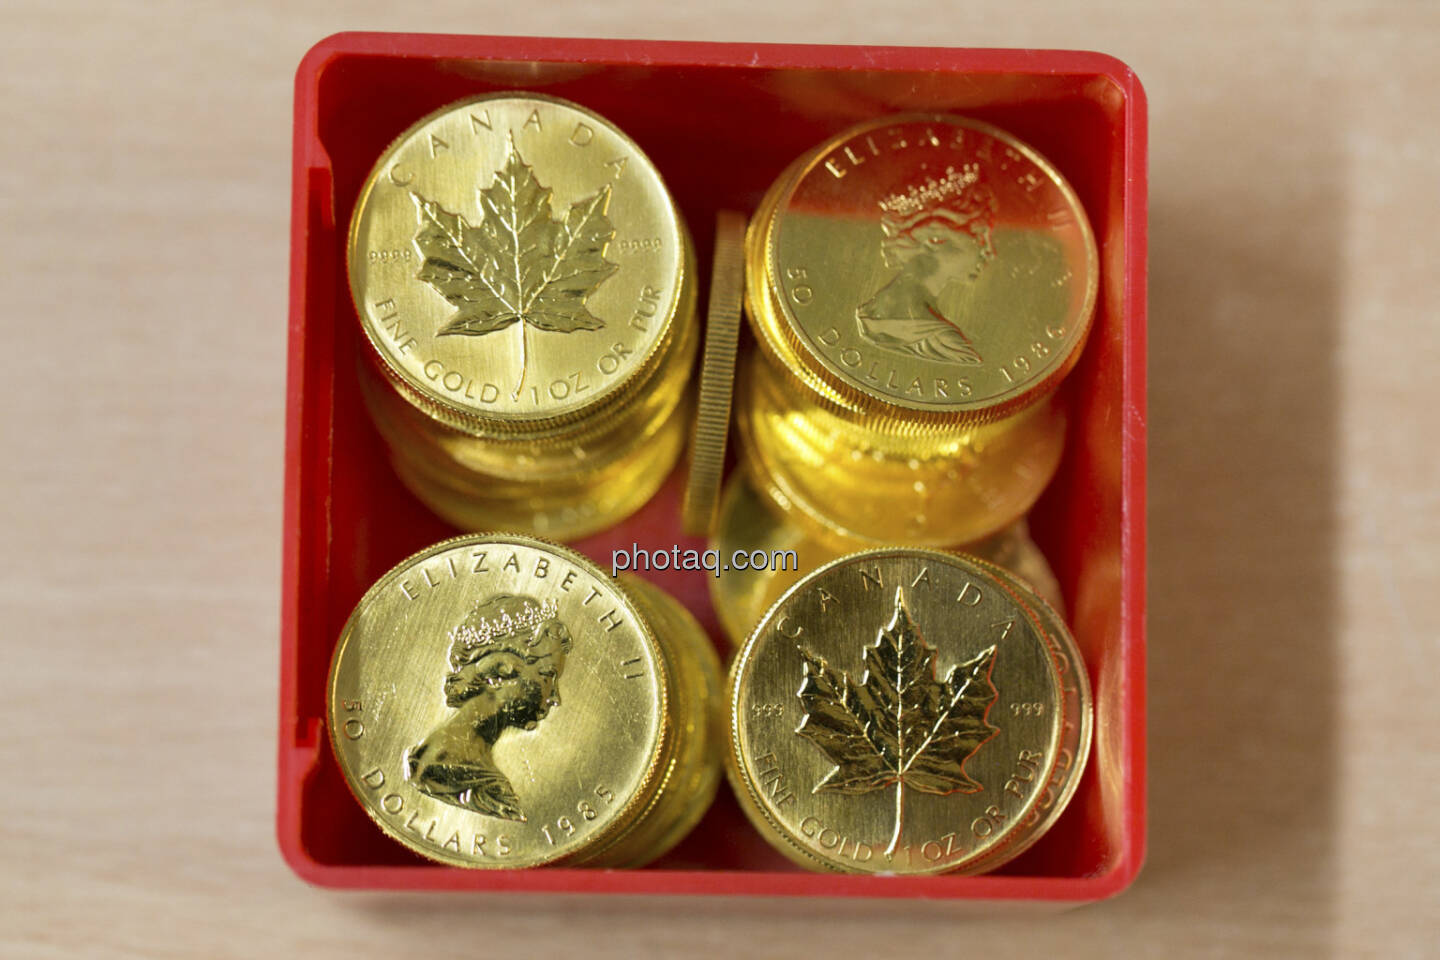 Goldmünzen, http://www.schoeller-muenzhandel.at